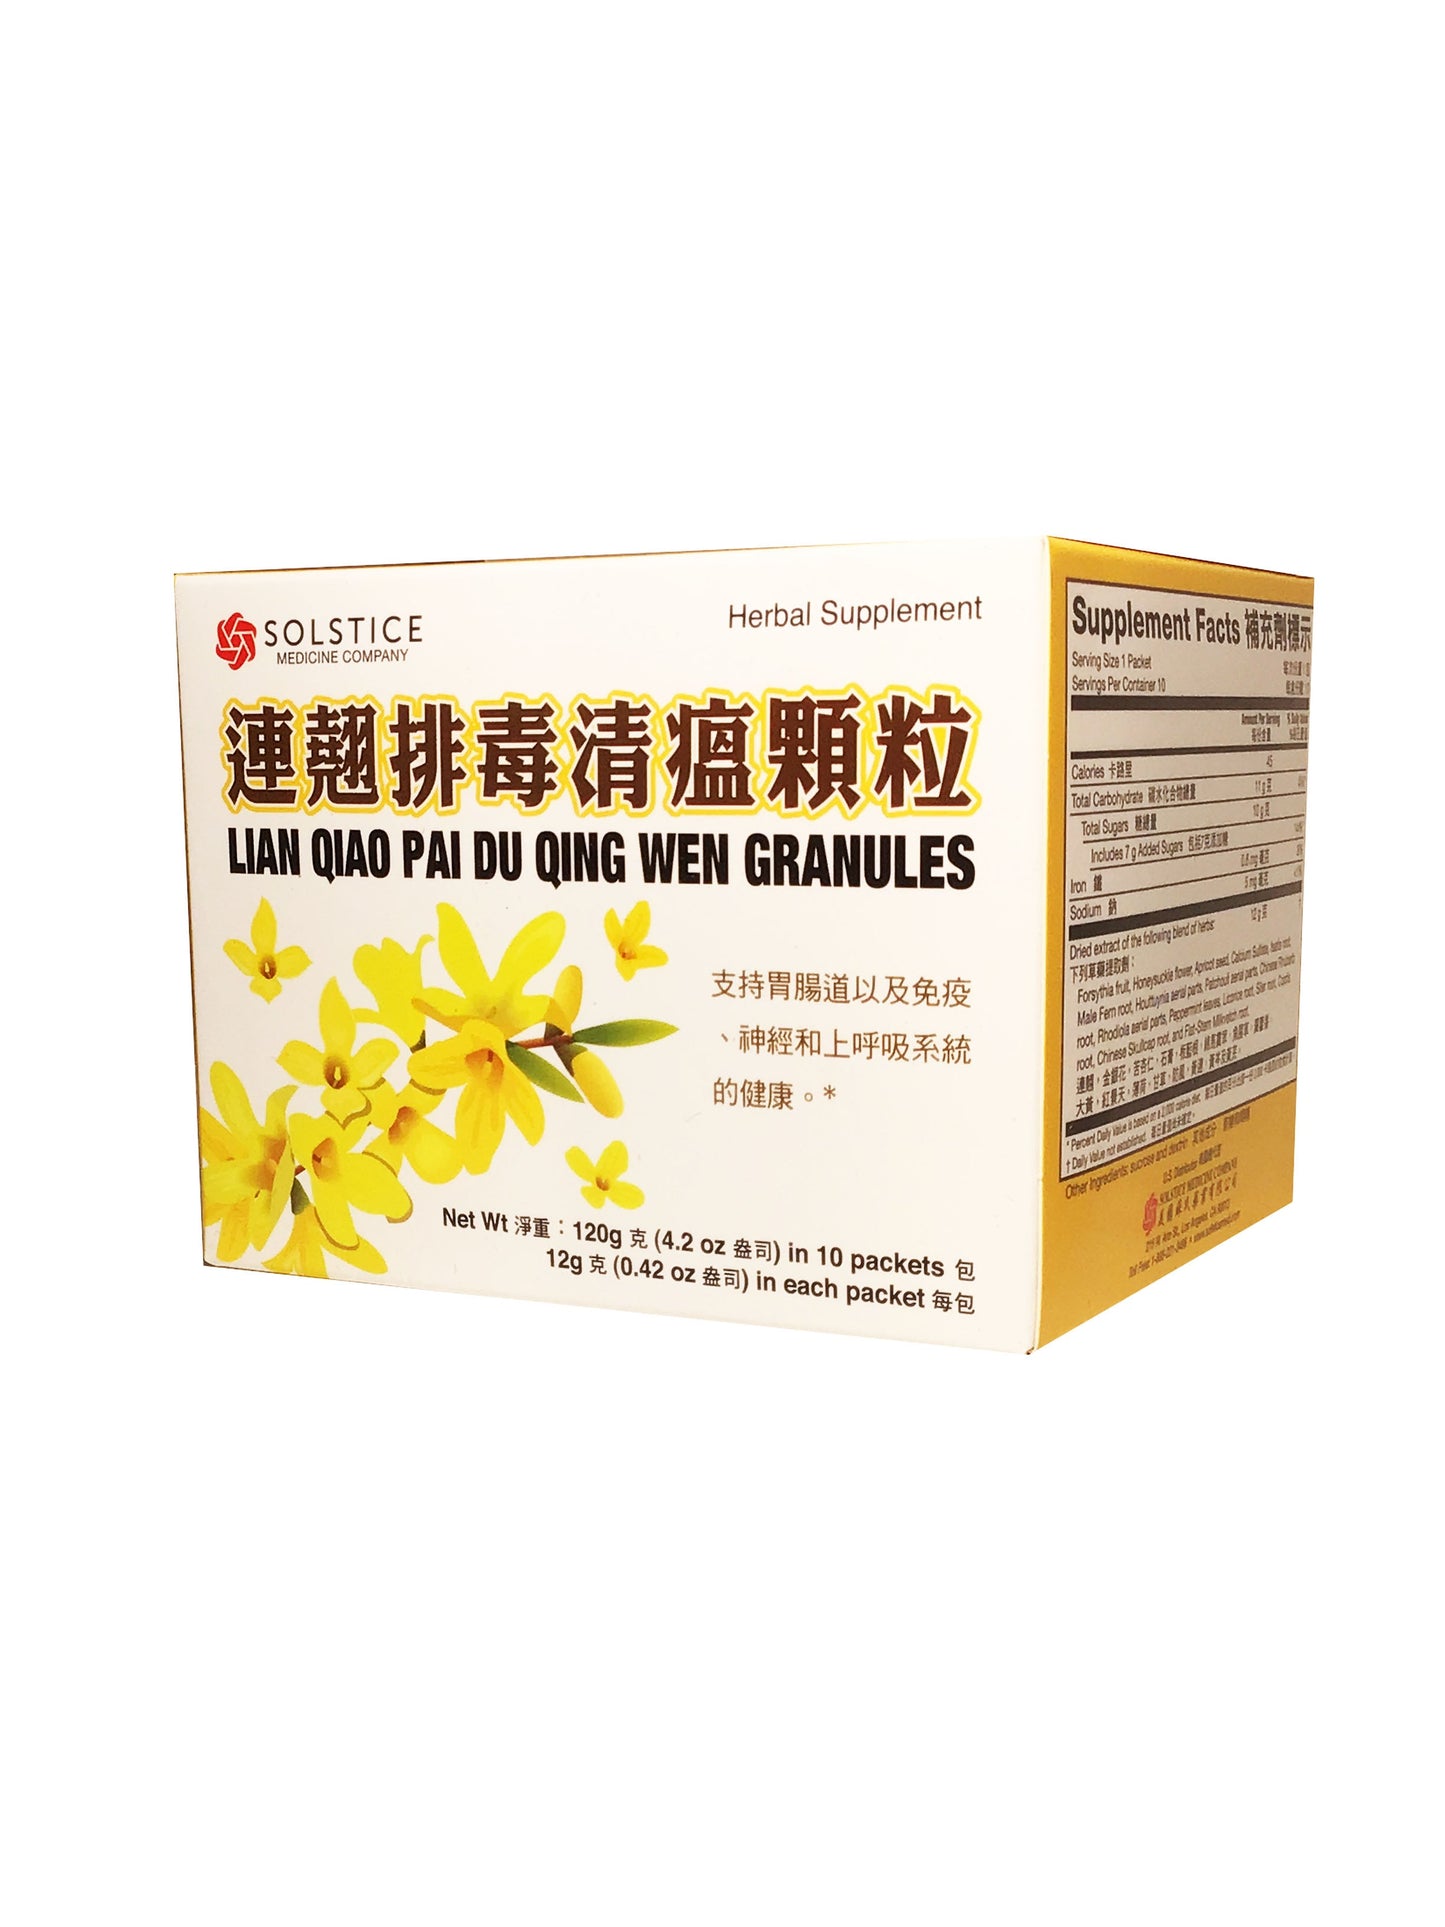 Lian Qiao Pai Du Qing Wen Granules (12g x 10 packets) 榆林牌 連翹排毒清瘟顆粒 (12克 x 10小包)